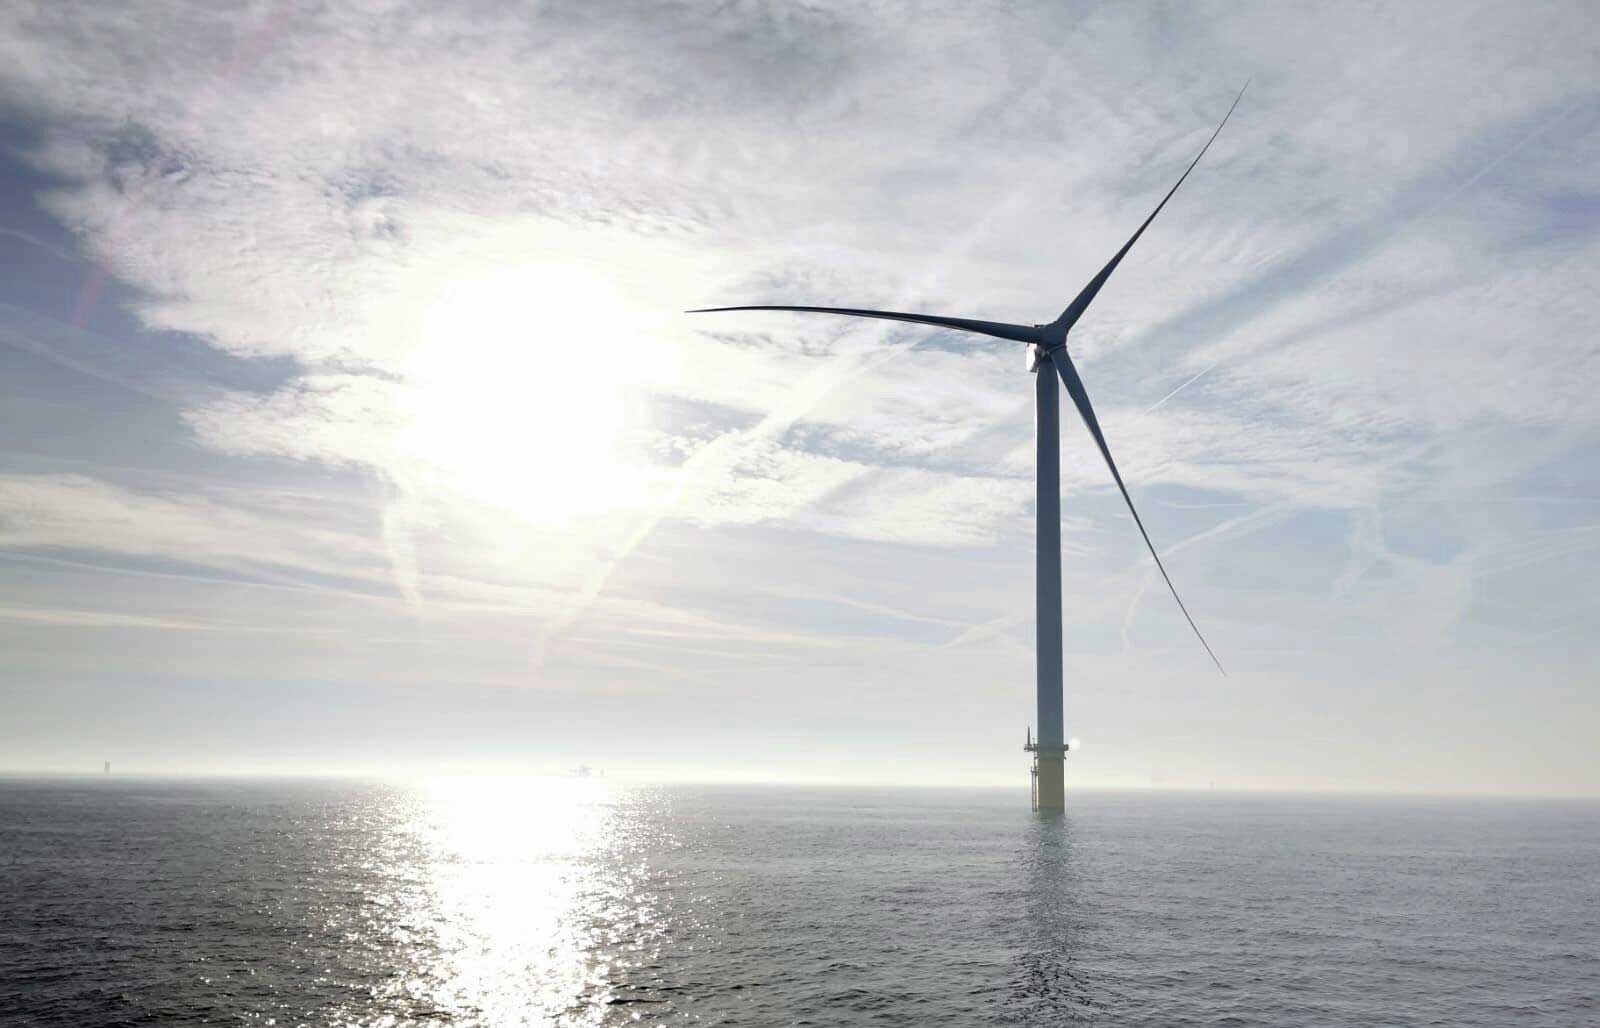 Hydrogène vert : Lhyfe annonce un nouveau méga-projet offshore aux Pays-Bas